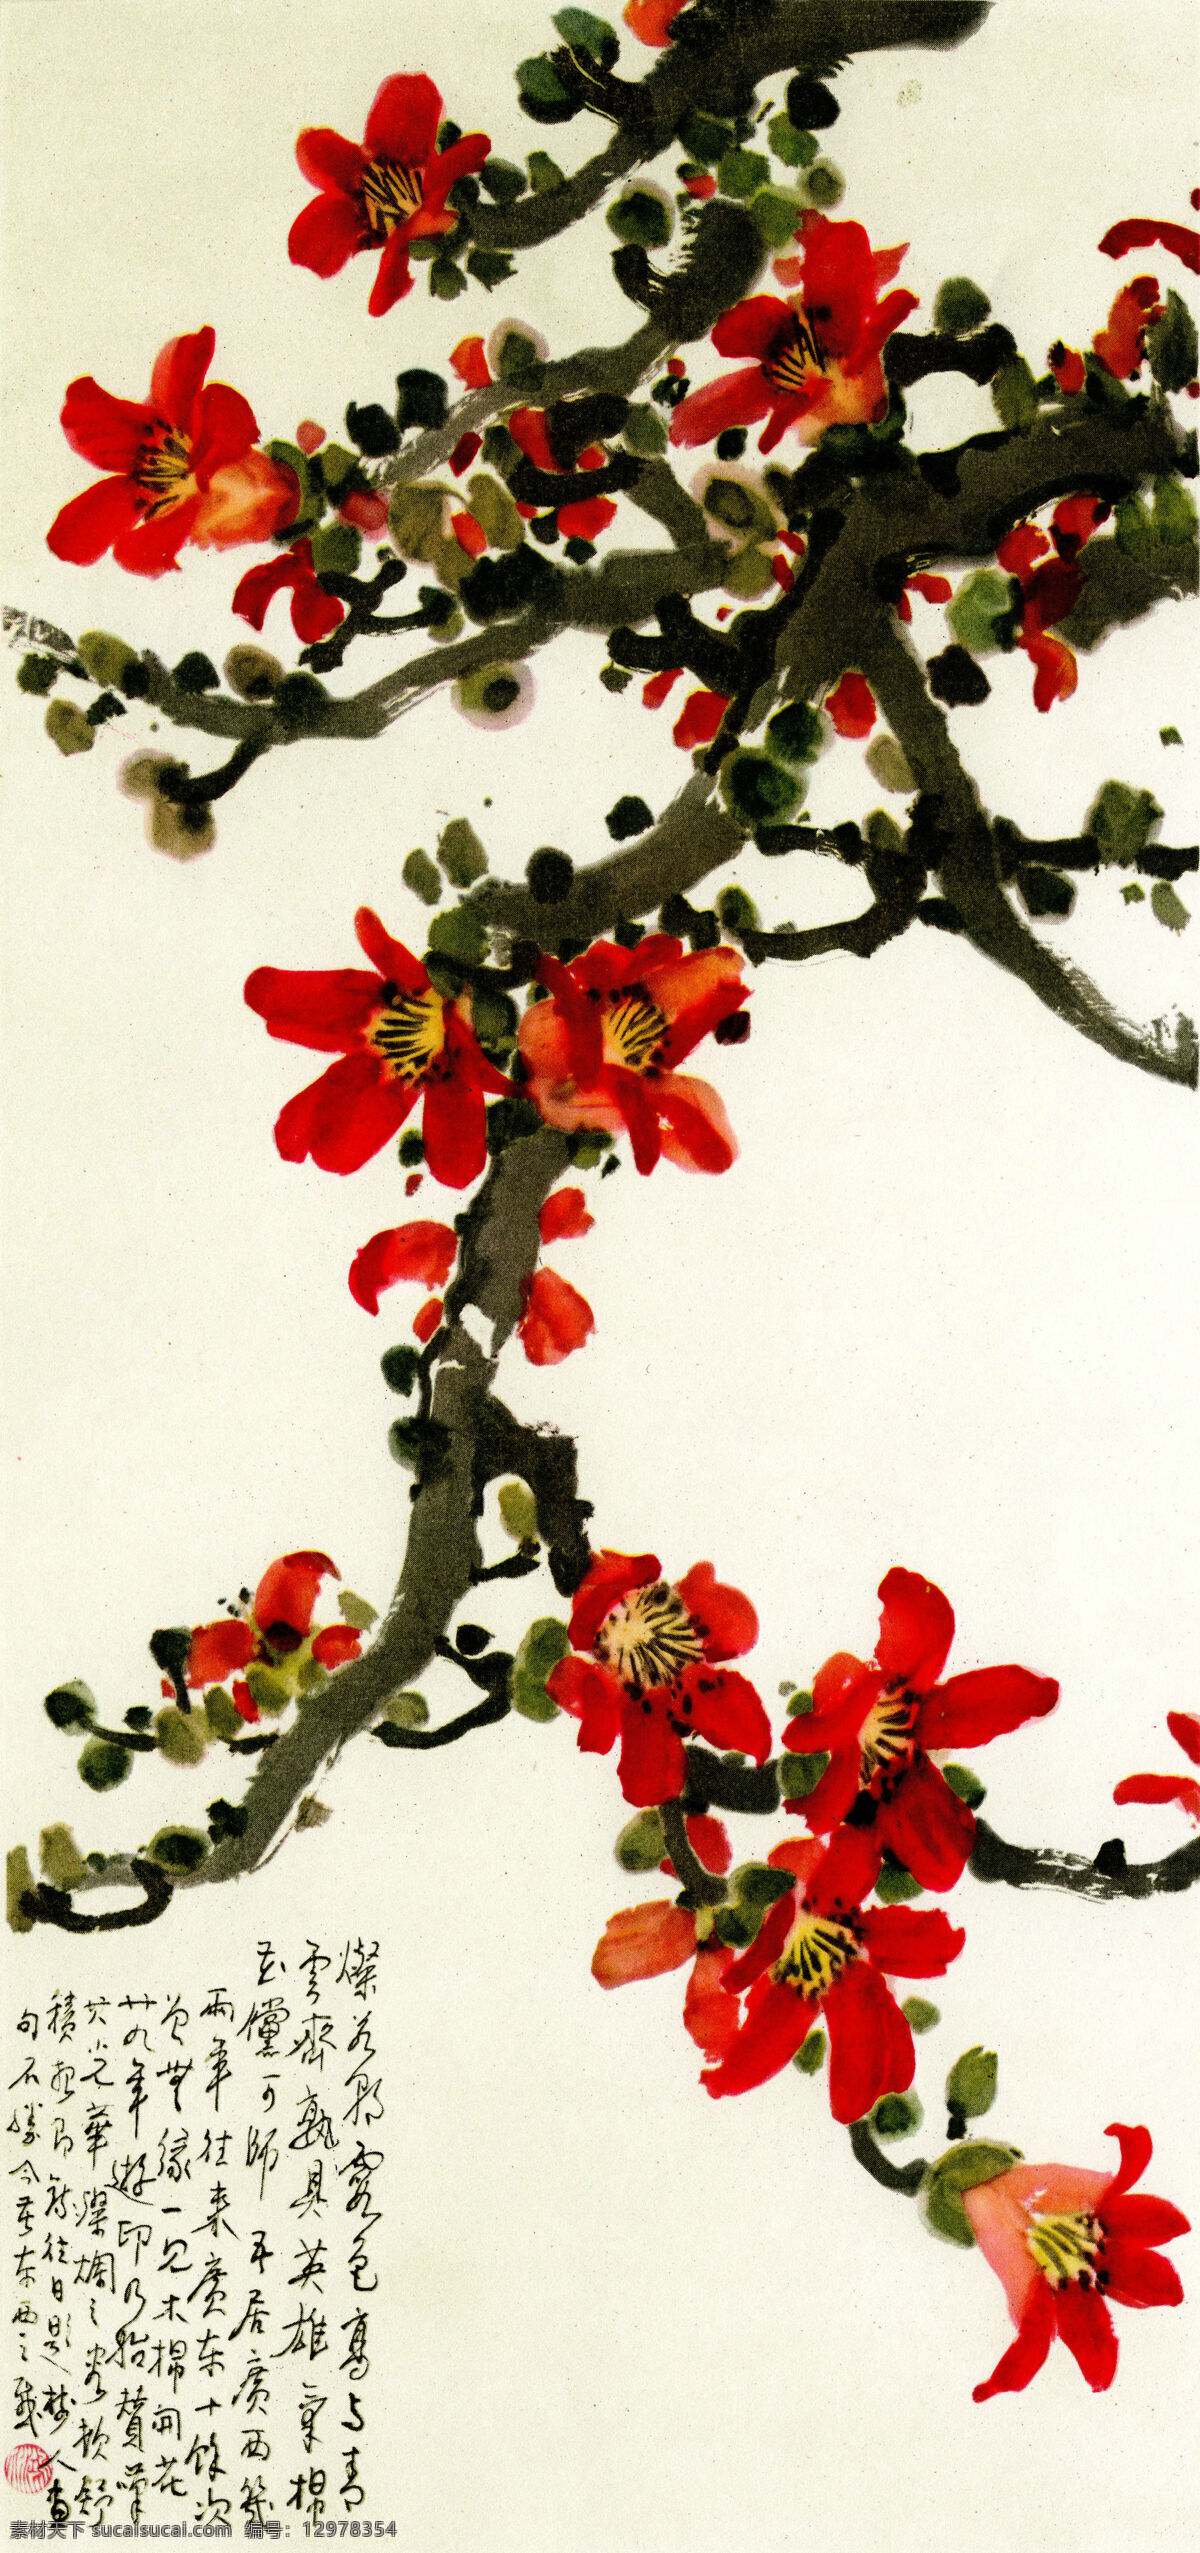 名家国画 木棉 红色 树木 树枝 木棉花 书法 提款 图章 绘画书法 文化艺术